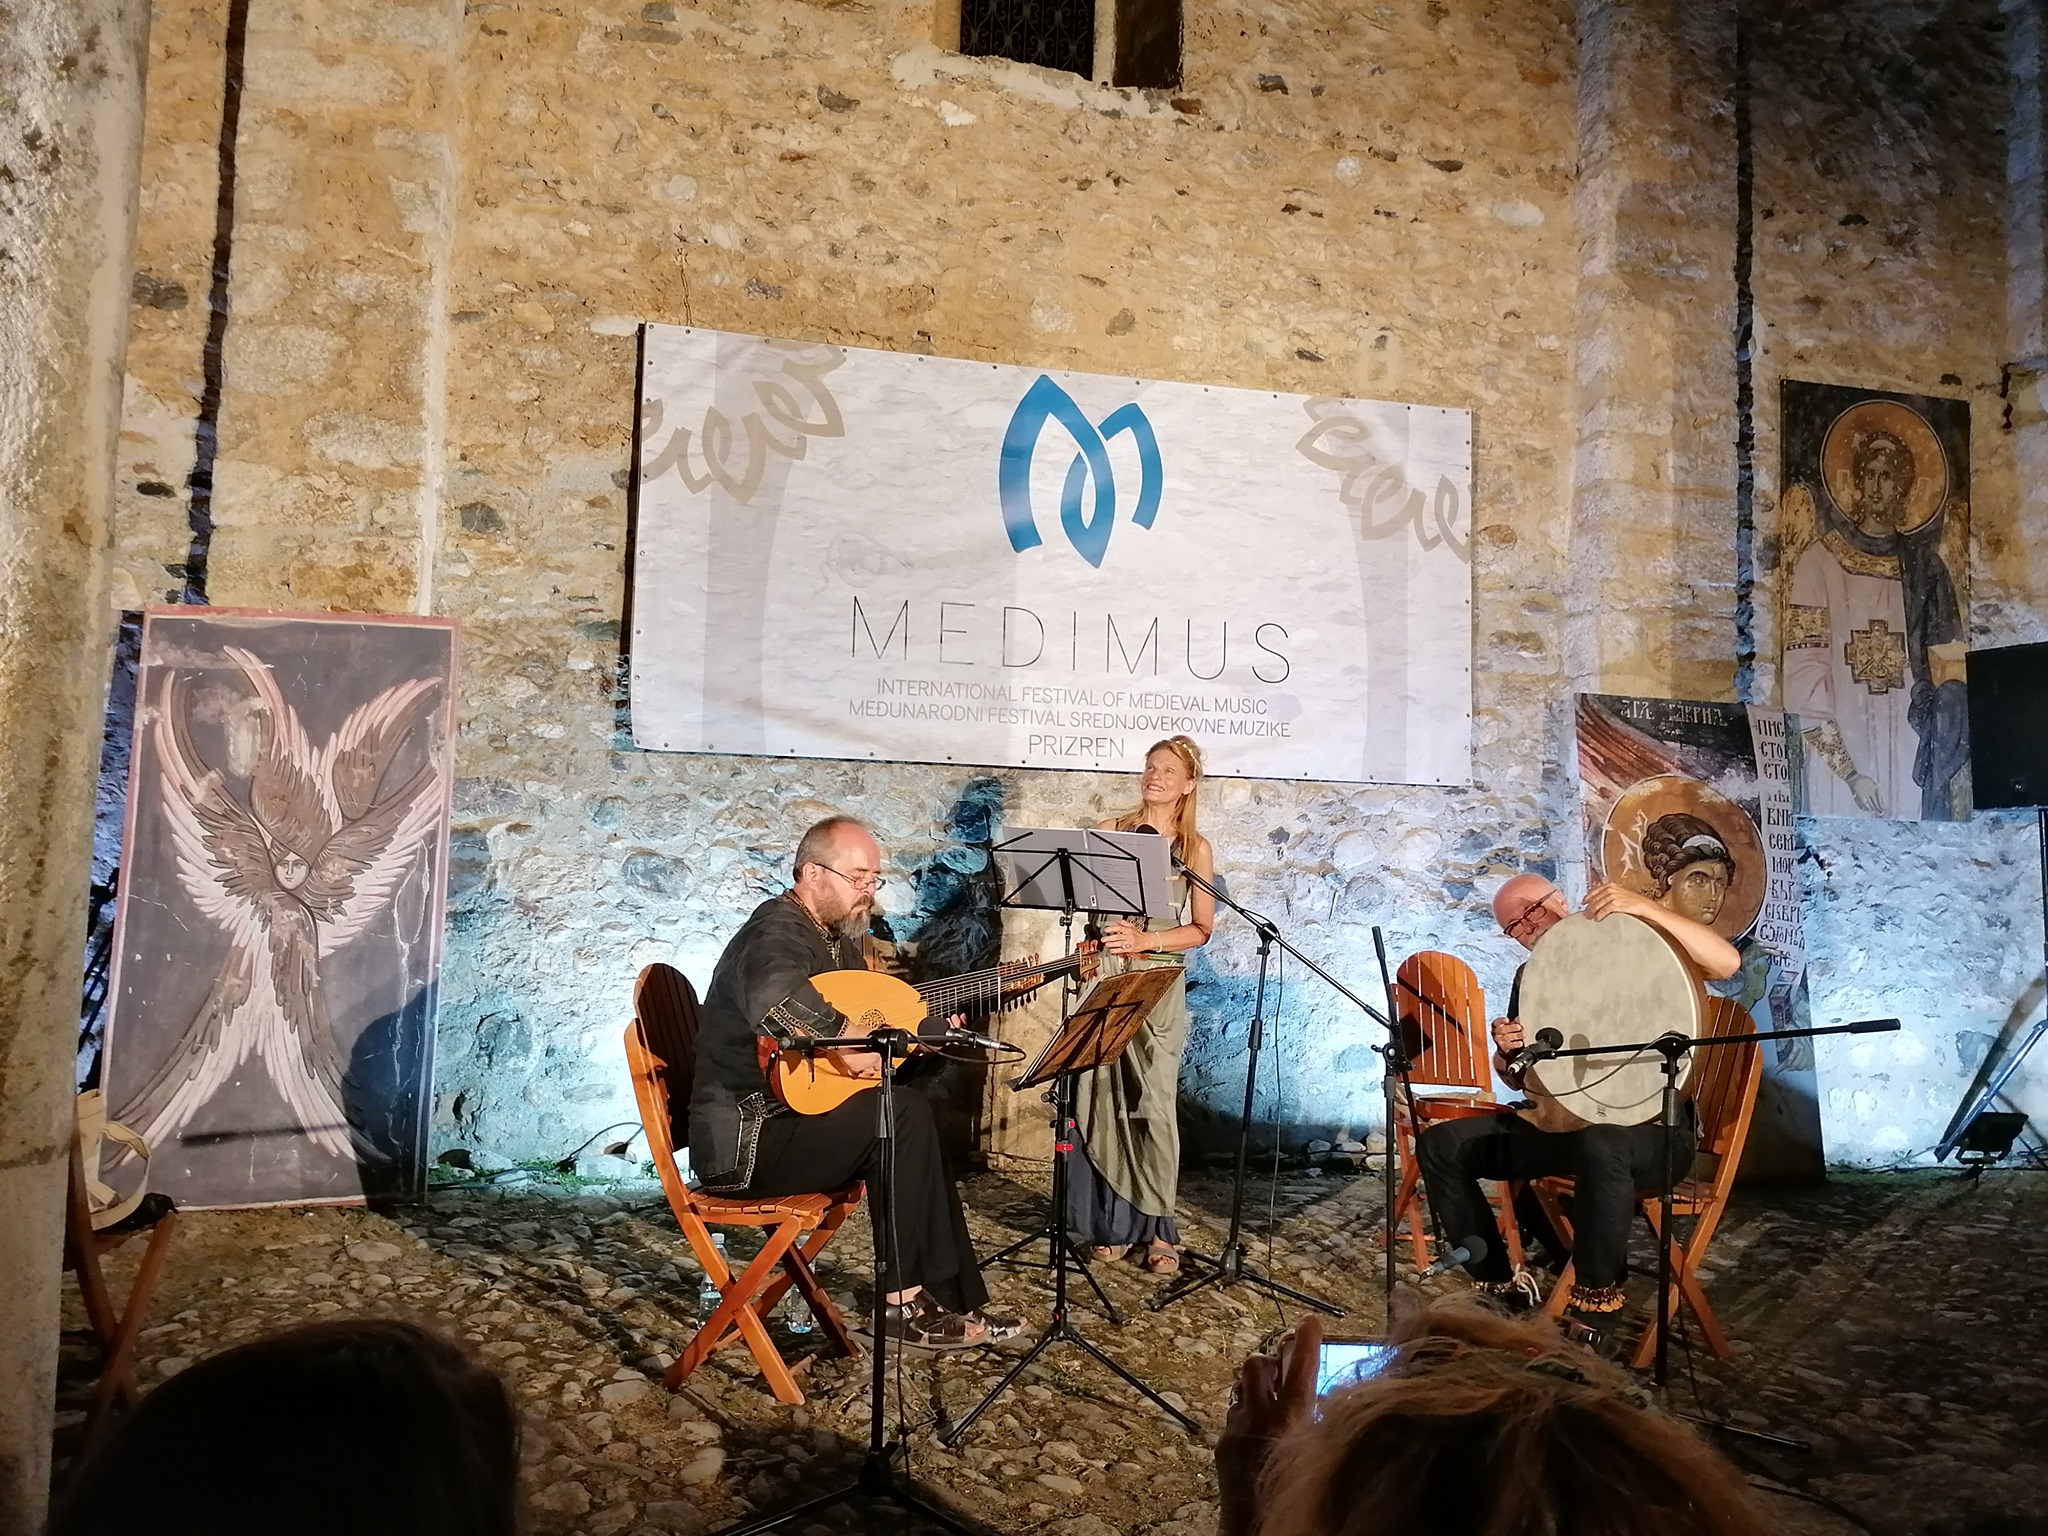 Festival srednjovekovne muzike “Medimus” ovog vikenda u Prizrenu